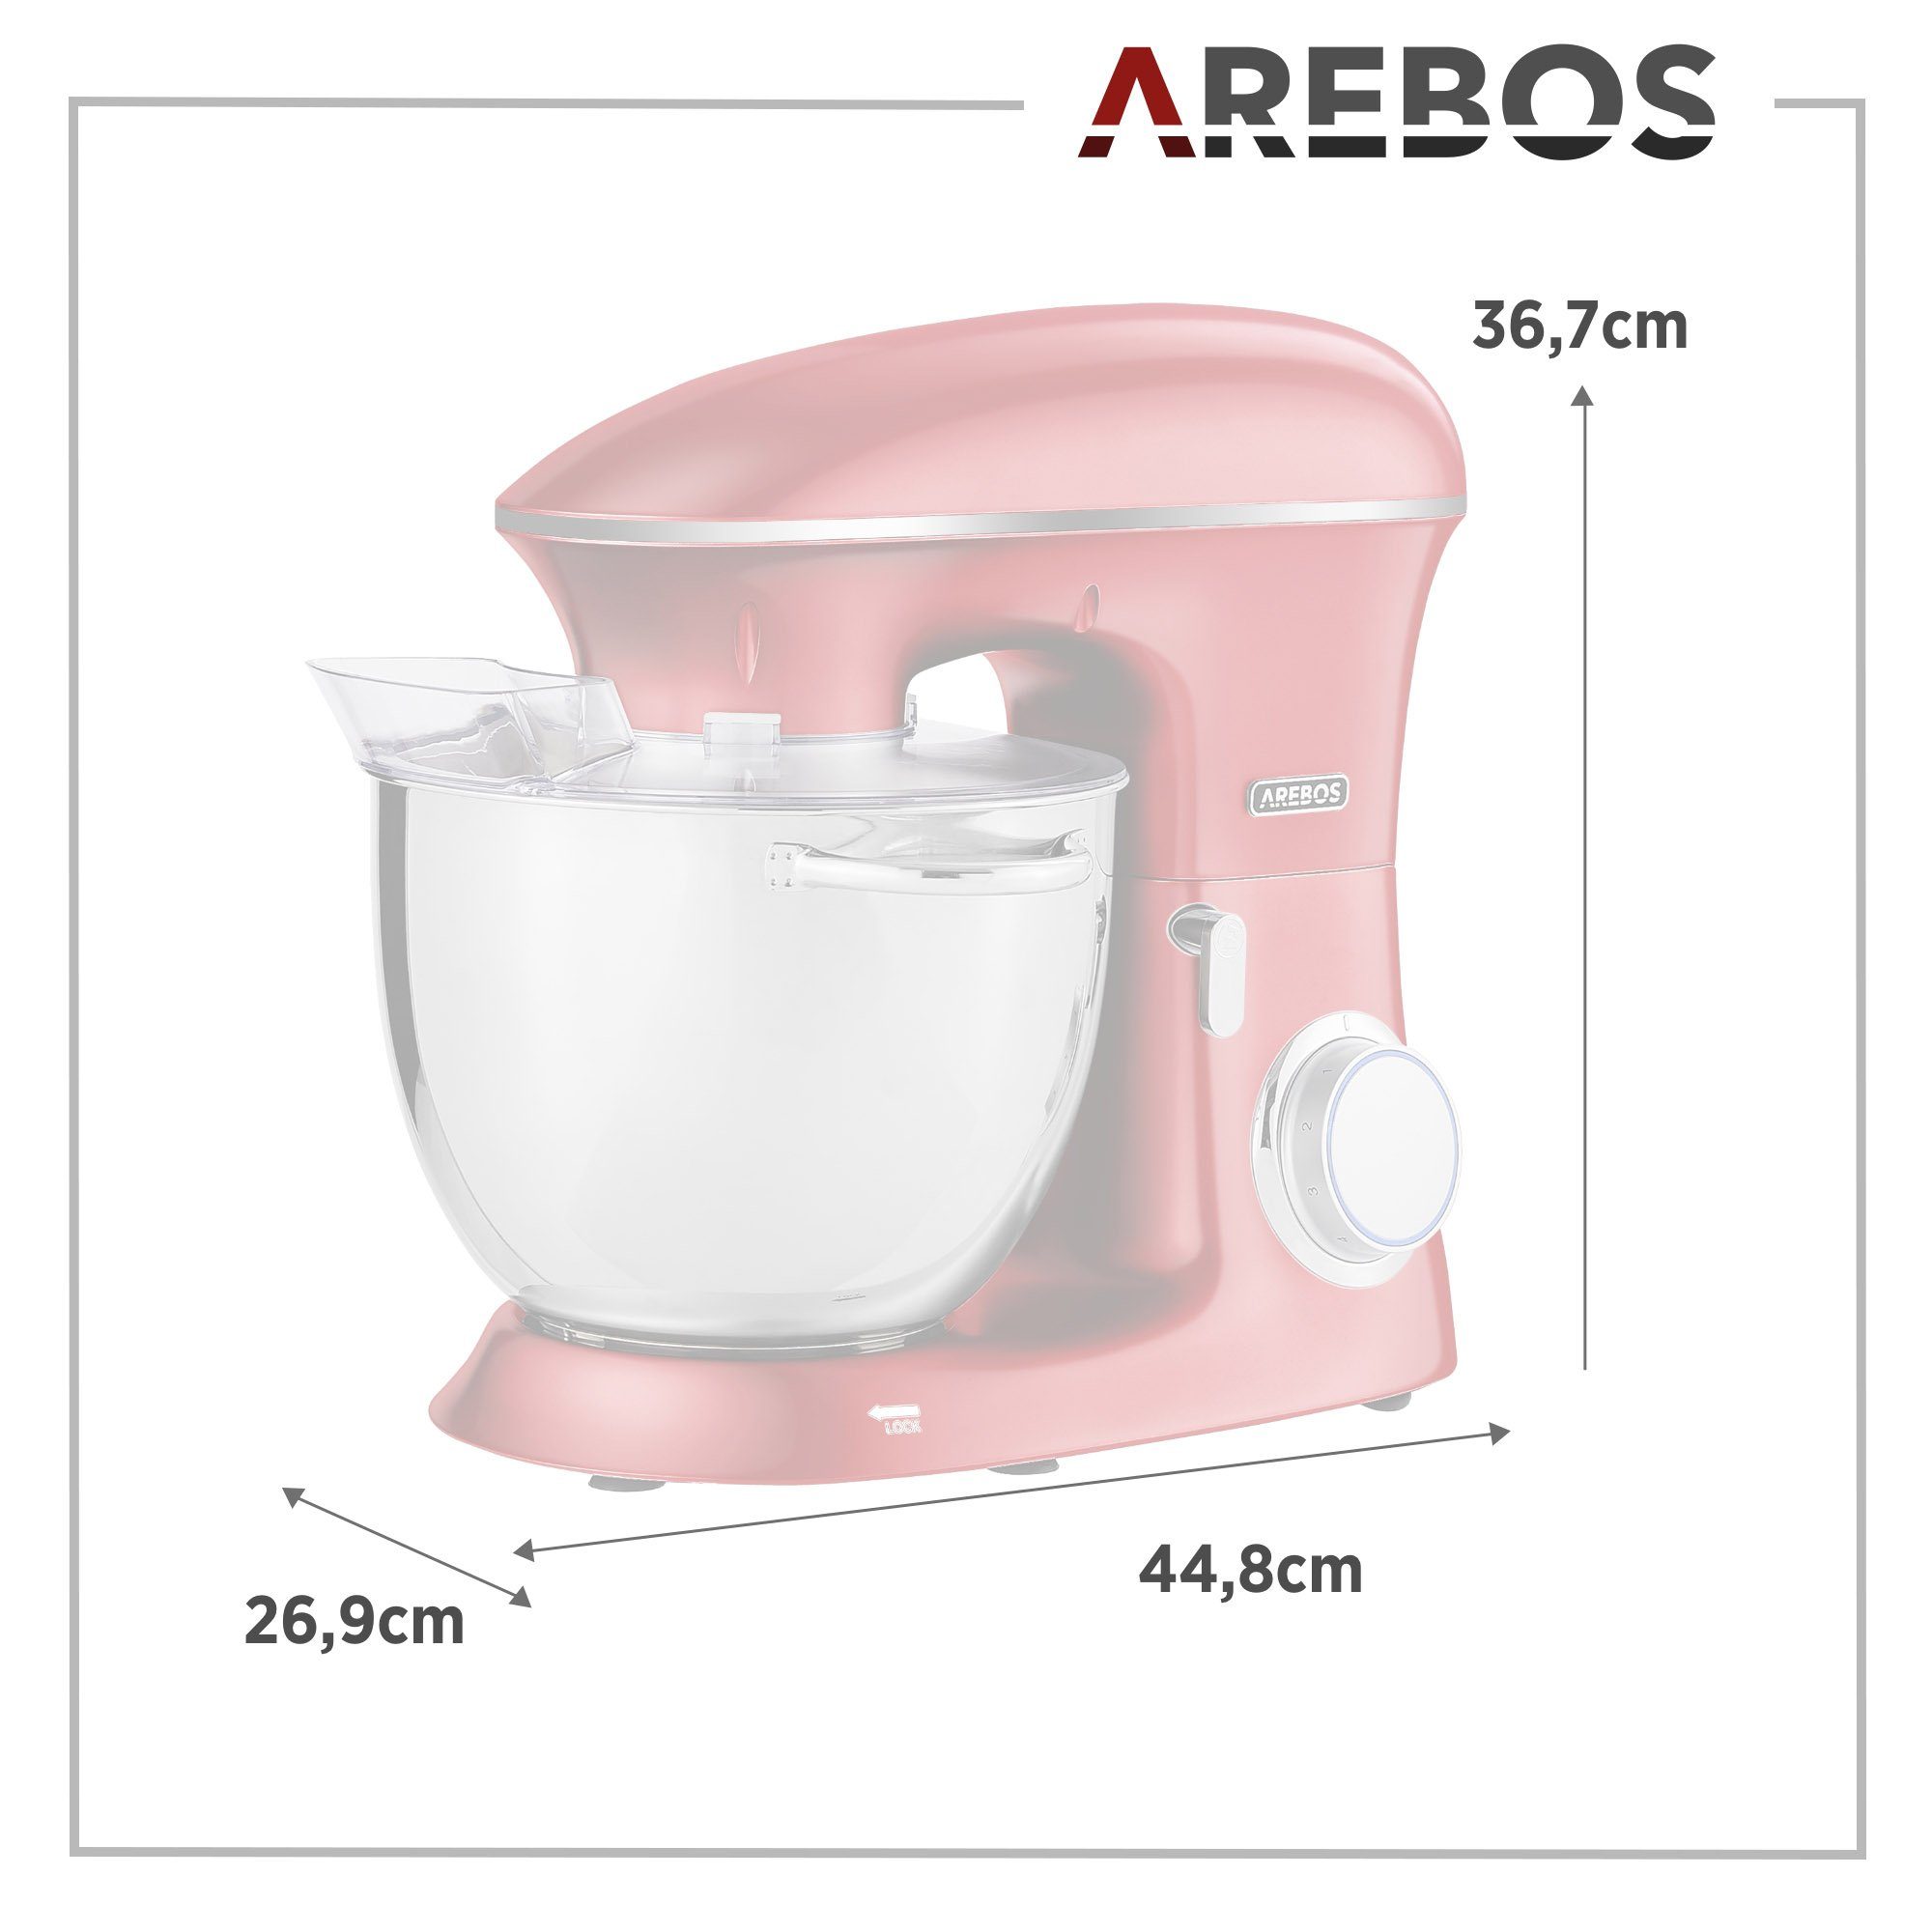 Arebos 8,00 l Schüssel Edelstahl-Rührschüssel, 1500 rot Küchenmaschine Geschwindigkeiten, 6 W,